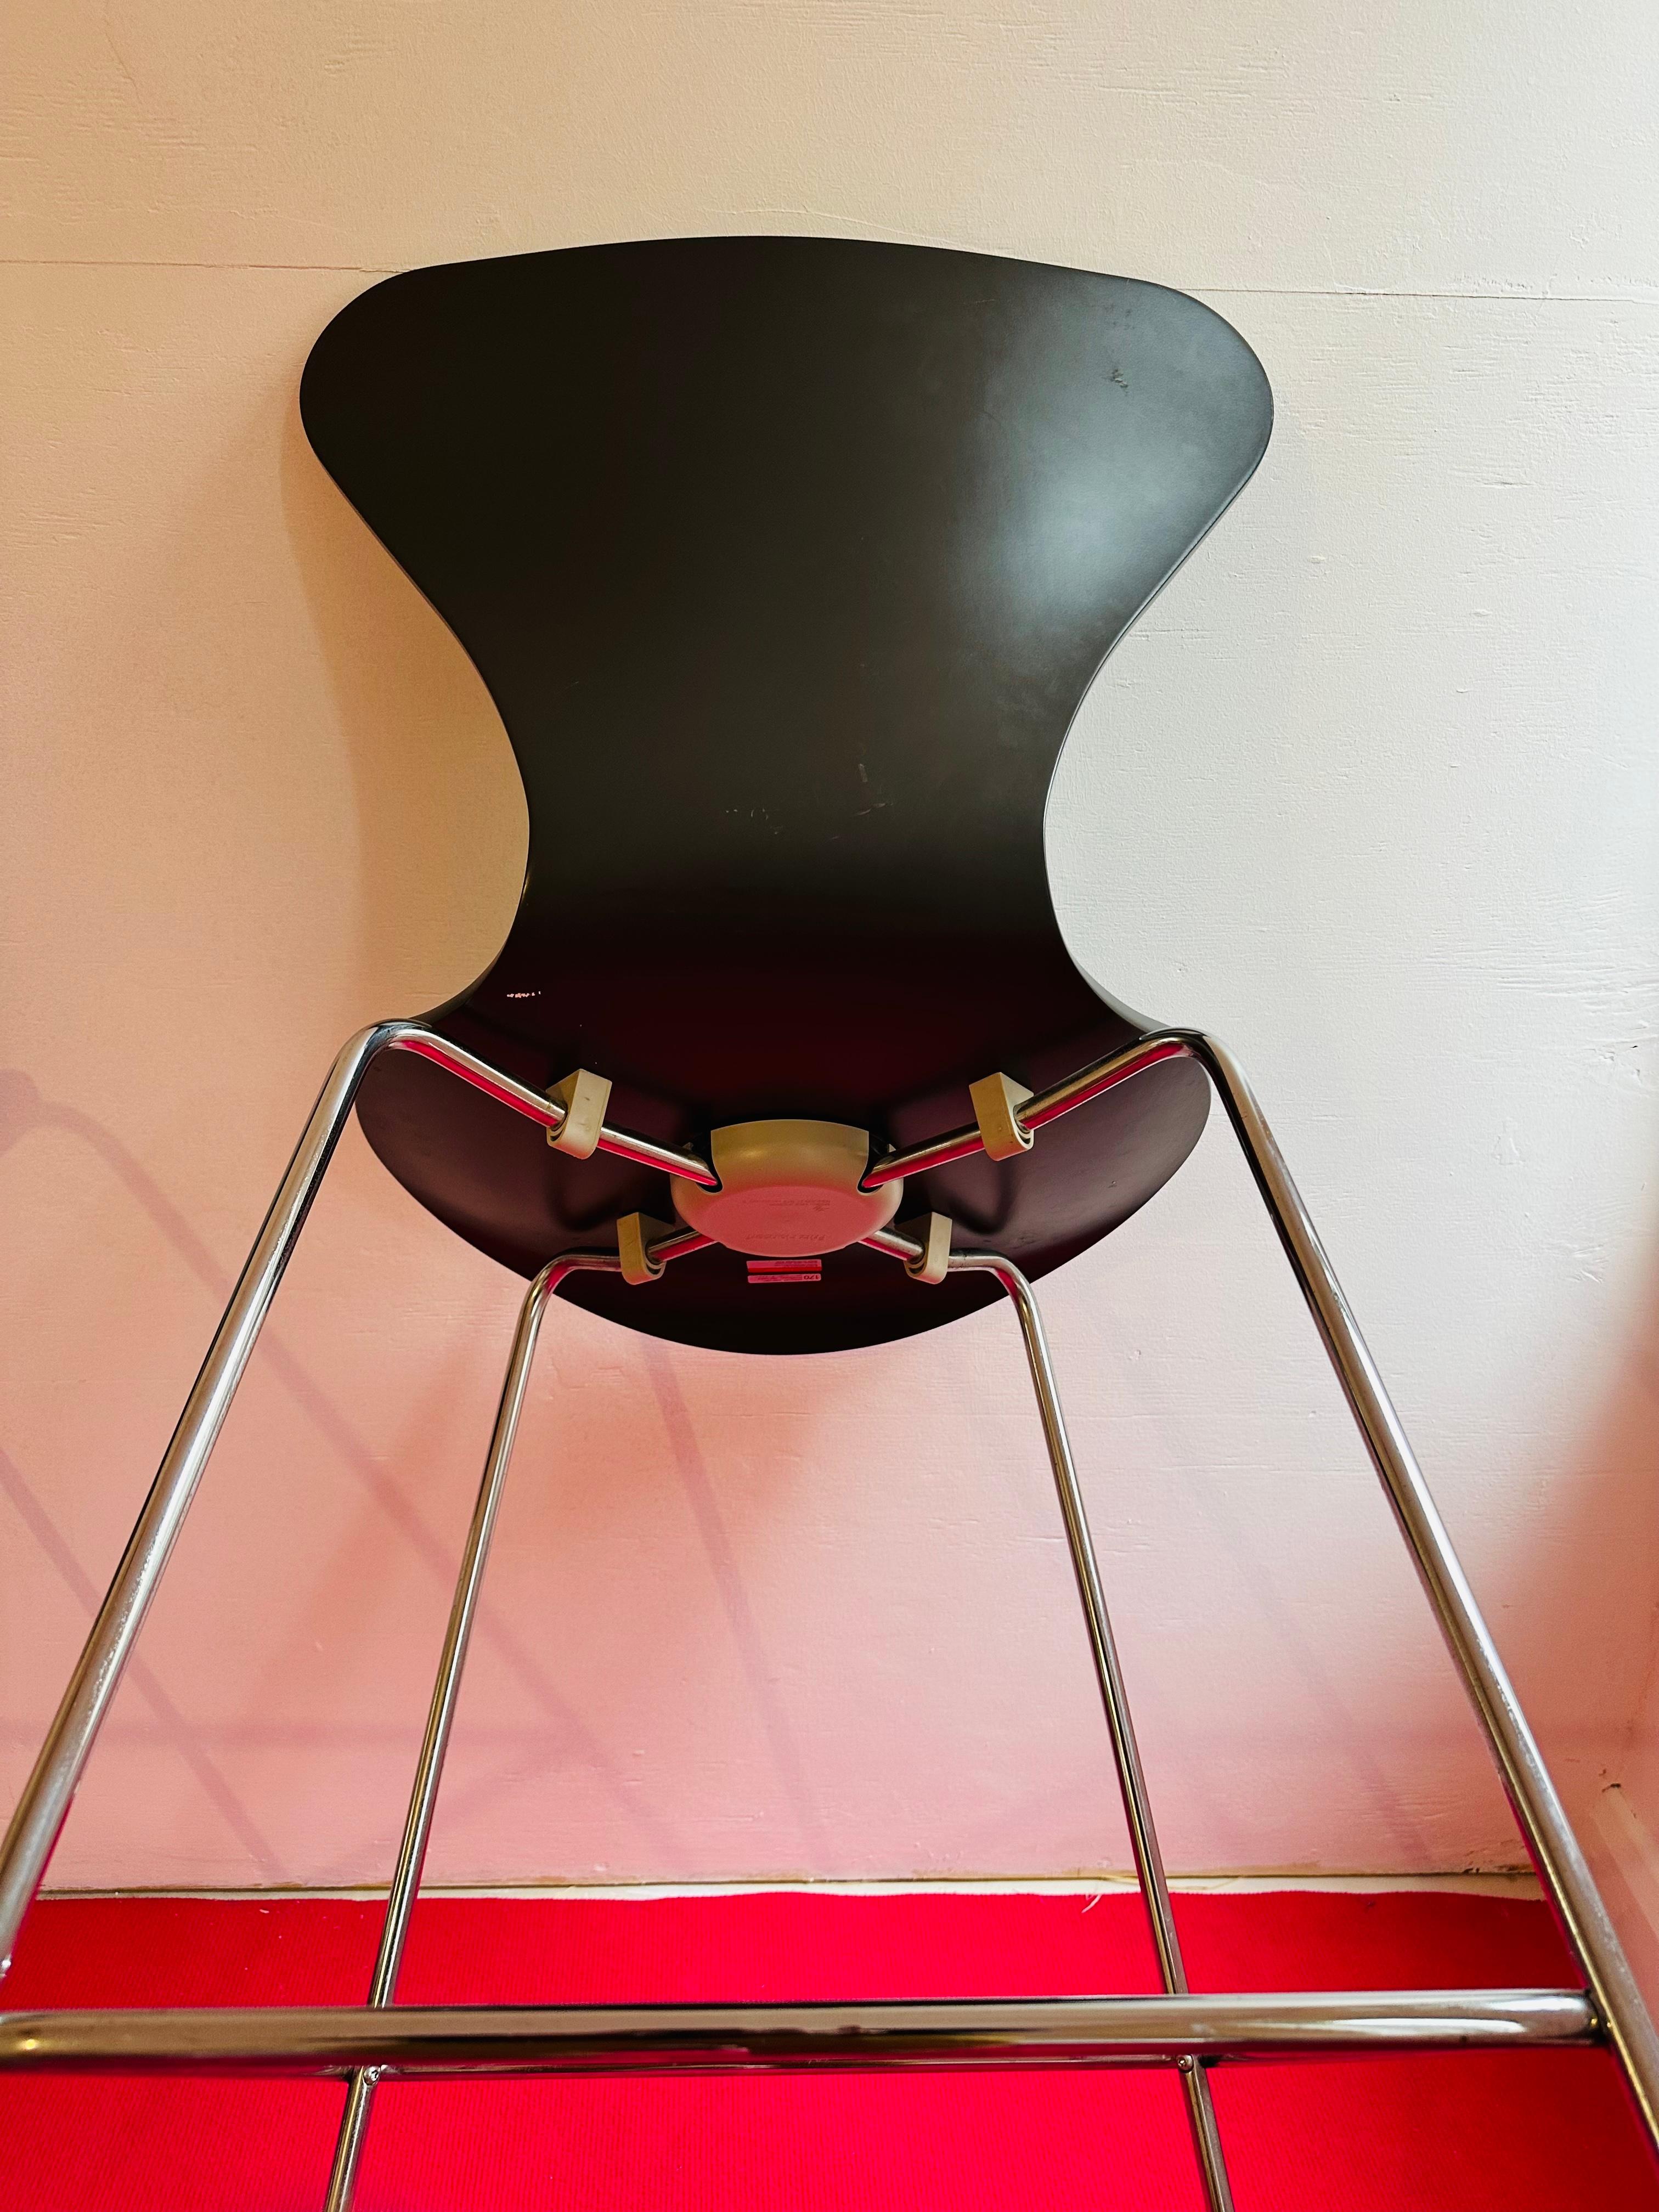 Paire de tabourets de bar de la série 7 de Fritz Hansen, conçus par Arne Jacobsen en 1955.  Année de fabrication 2005.

L'assise est en frêne courbé laqué gris foncé avec des pieds en acier chromé.  

En bon état vintage avec quelques éclats et